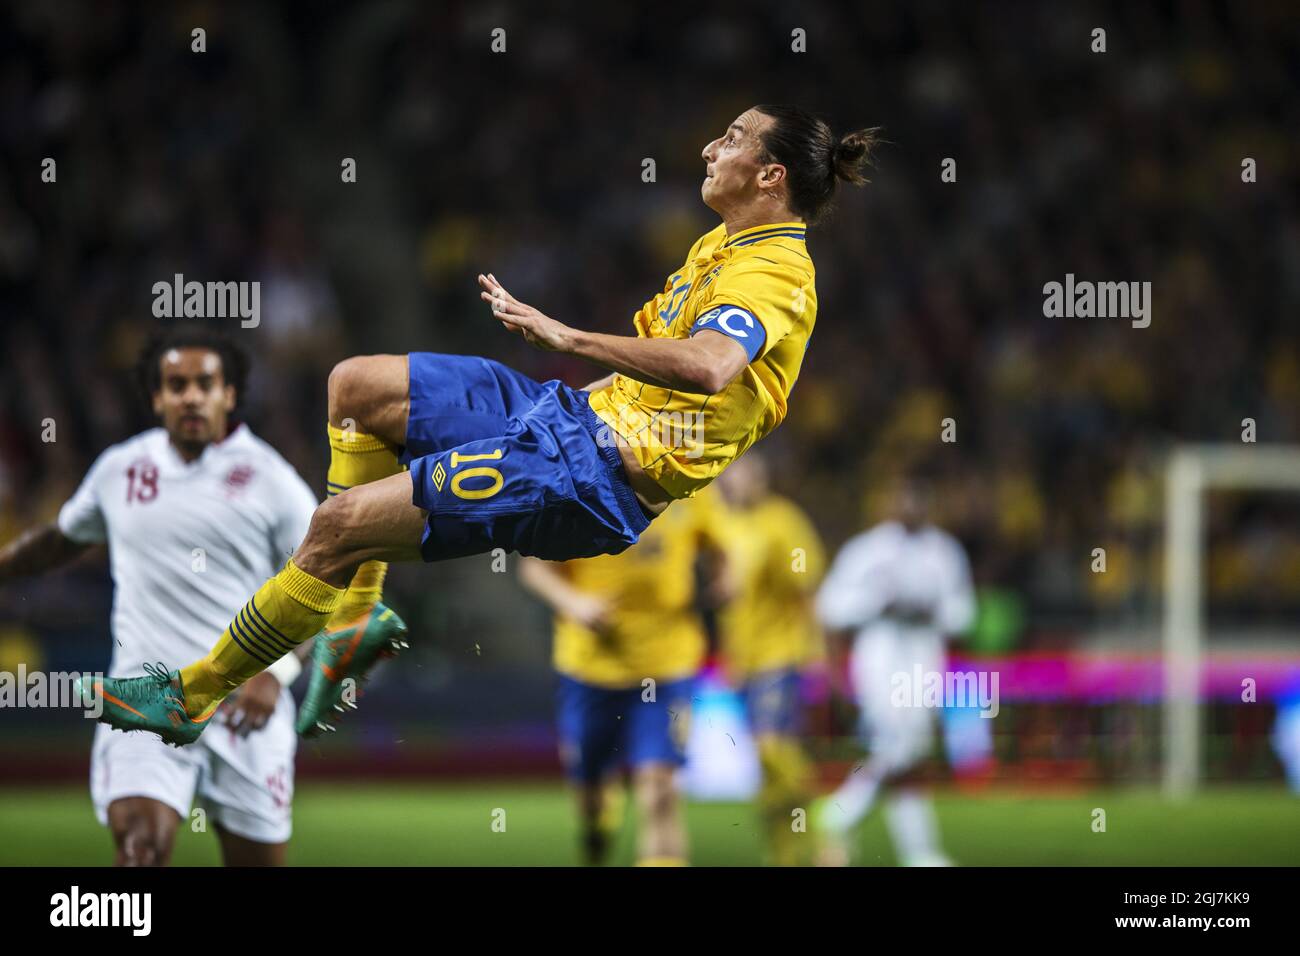 Sweden Vs England 2012 Ibrahimovic Goal 